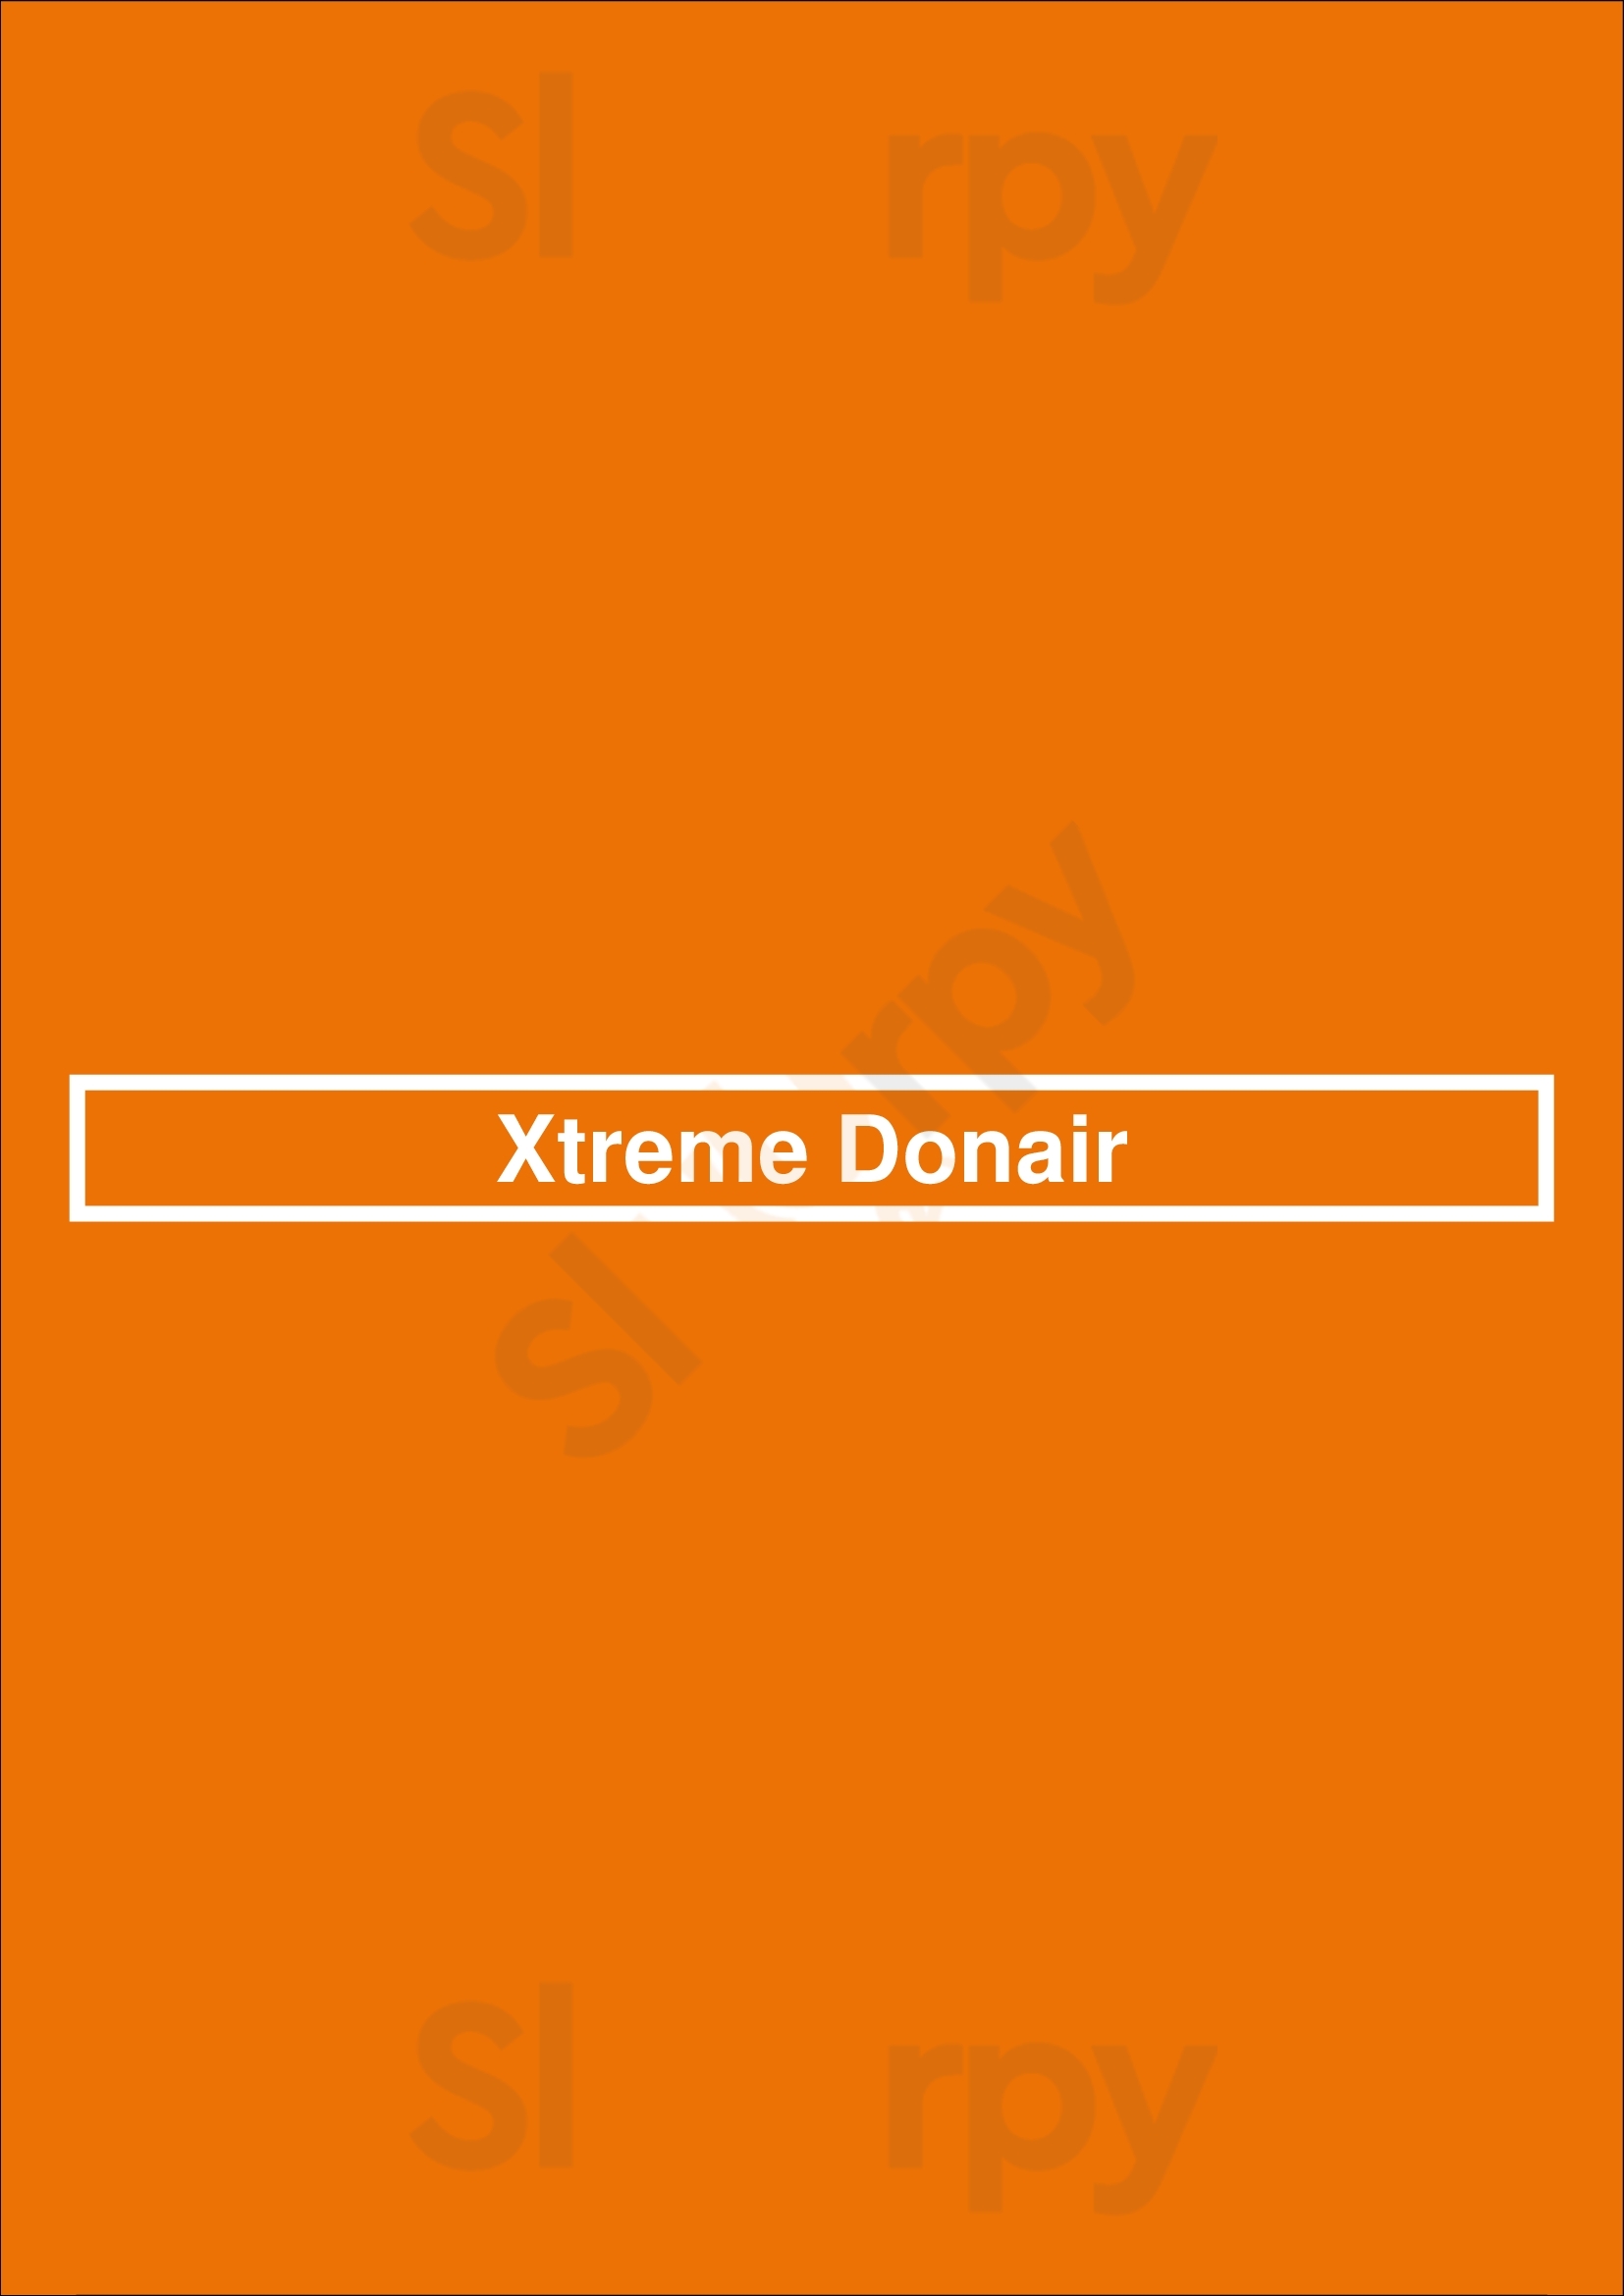 Xtreme Donair Airdrie Menu - 1